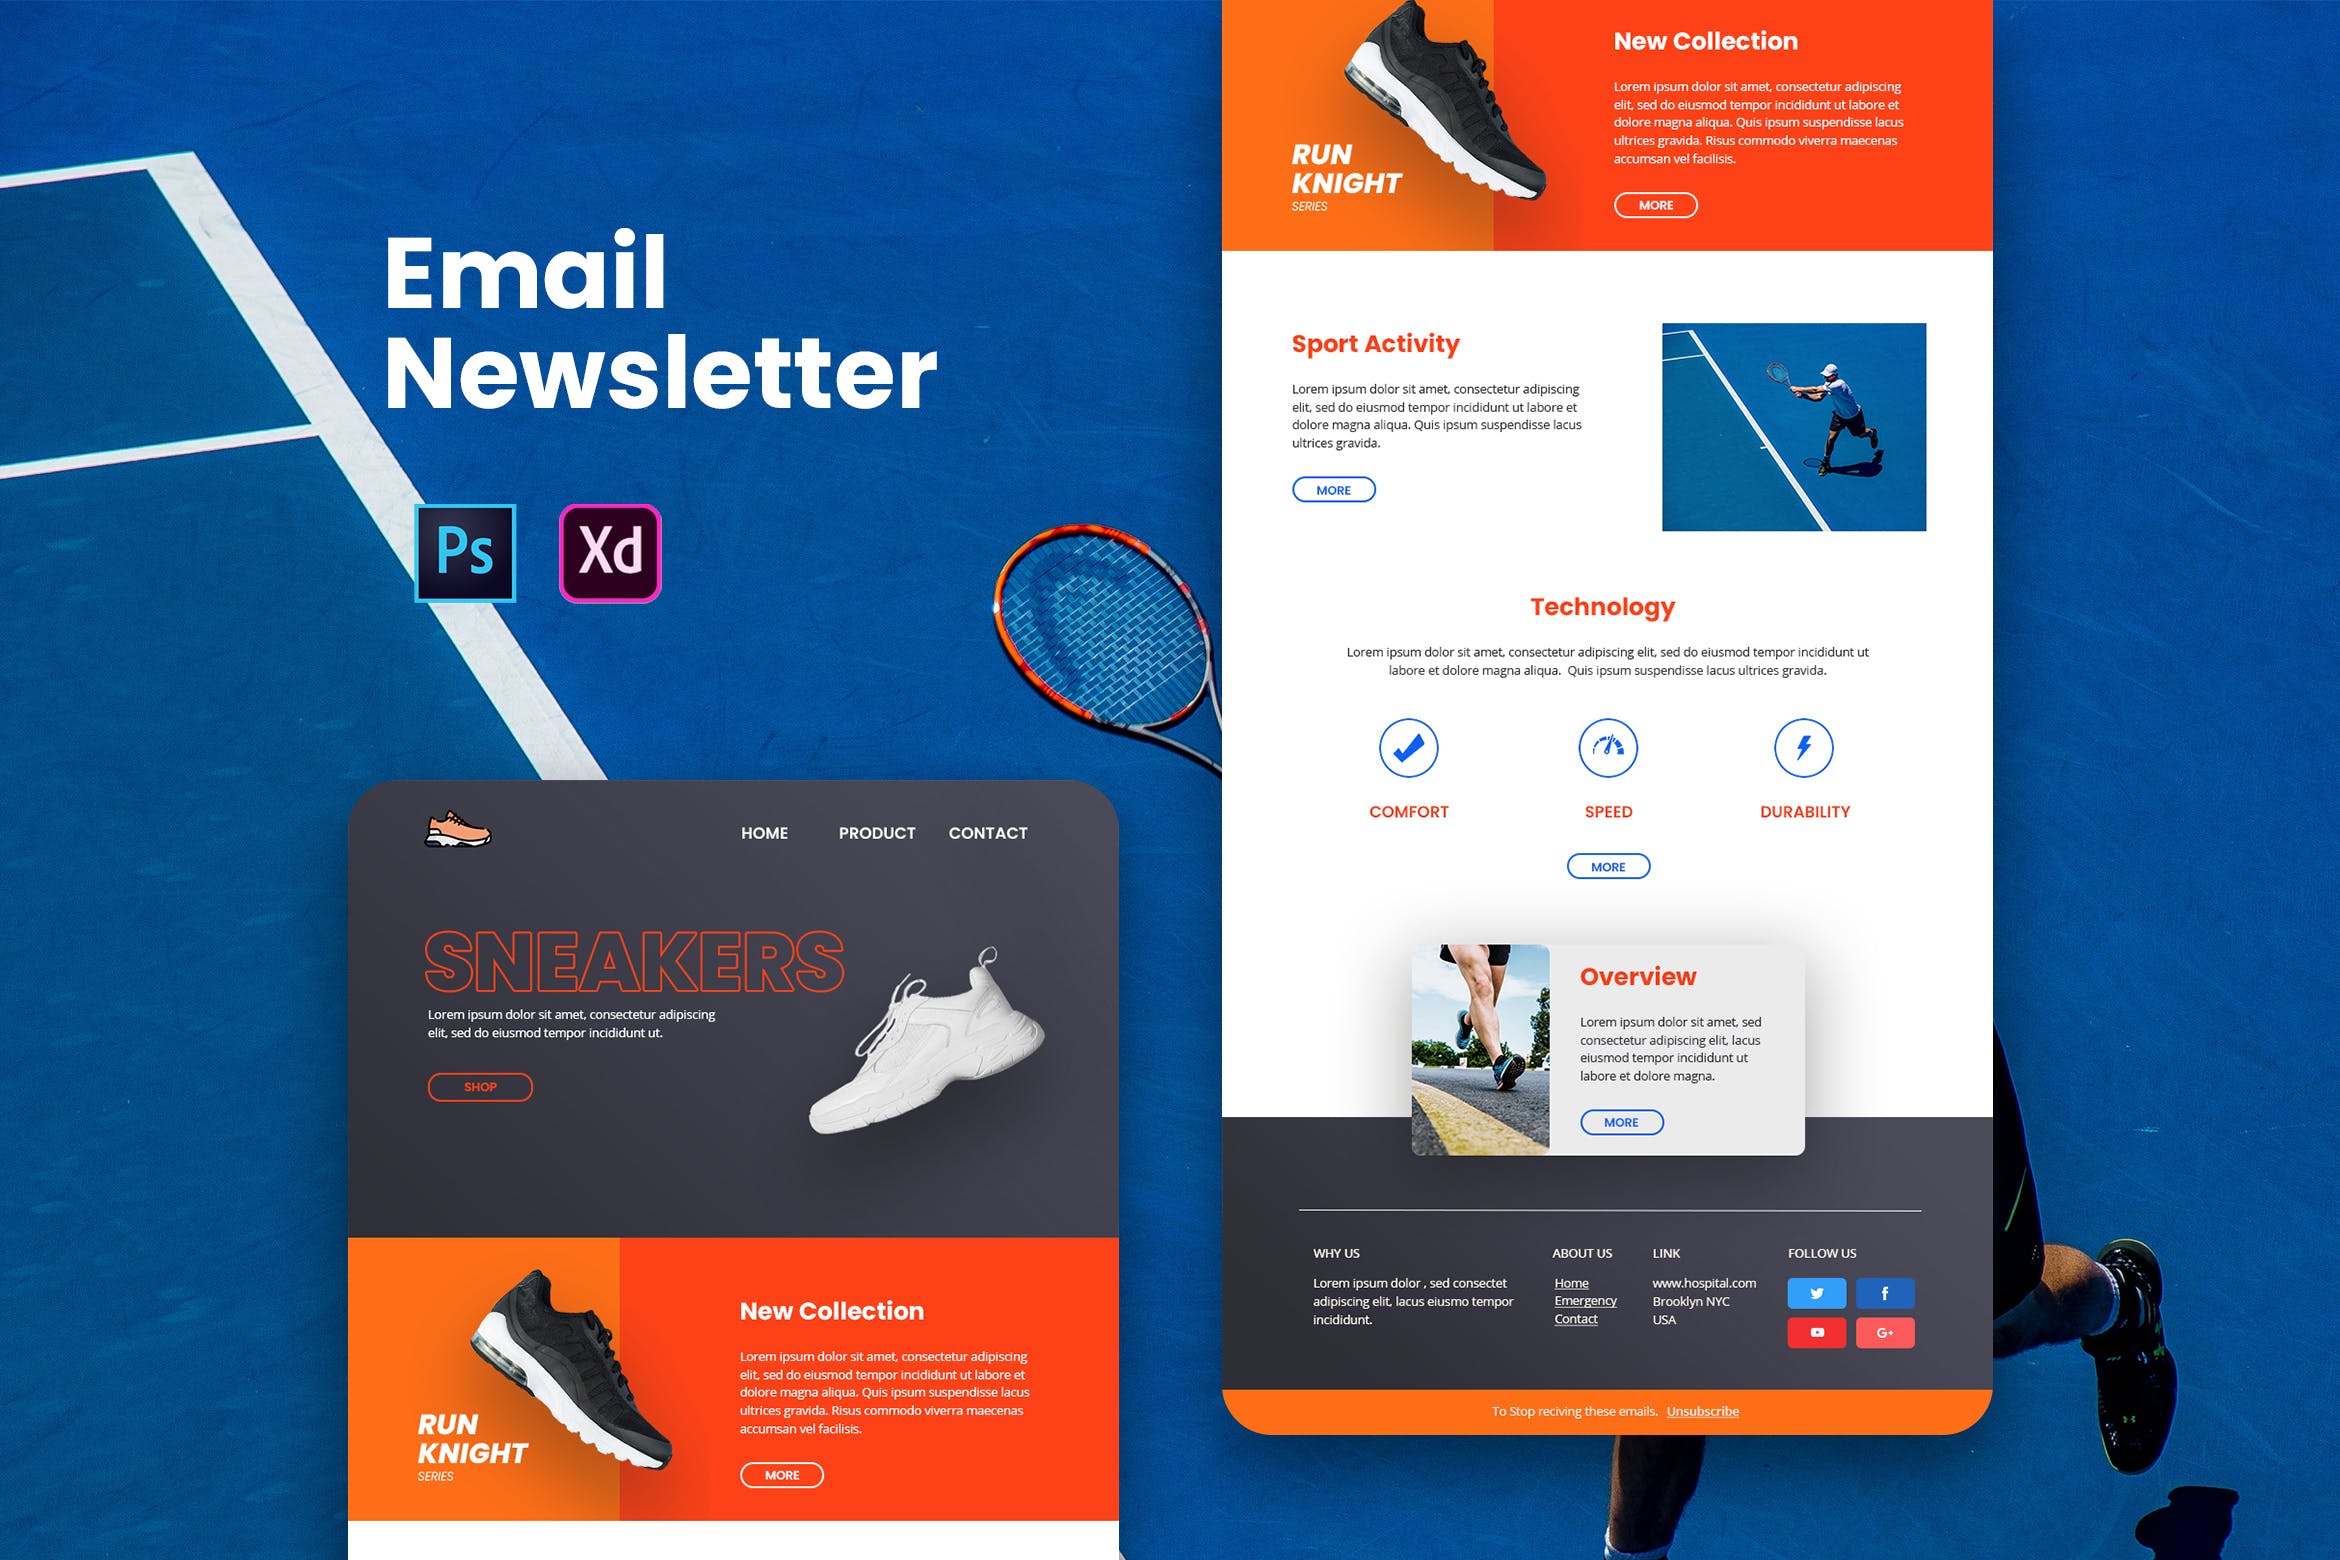 运动鞋品牌营销推广EDM邮件模板第一素材精选 Footwear Email Newsletter插图